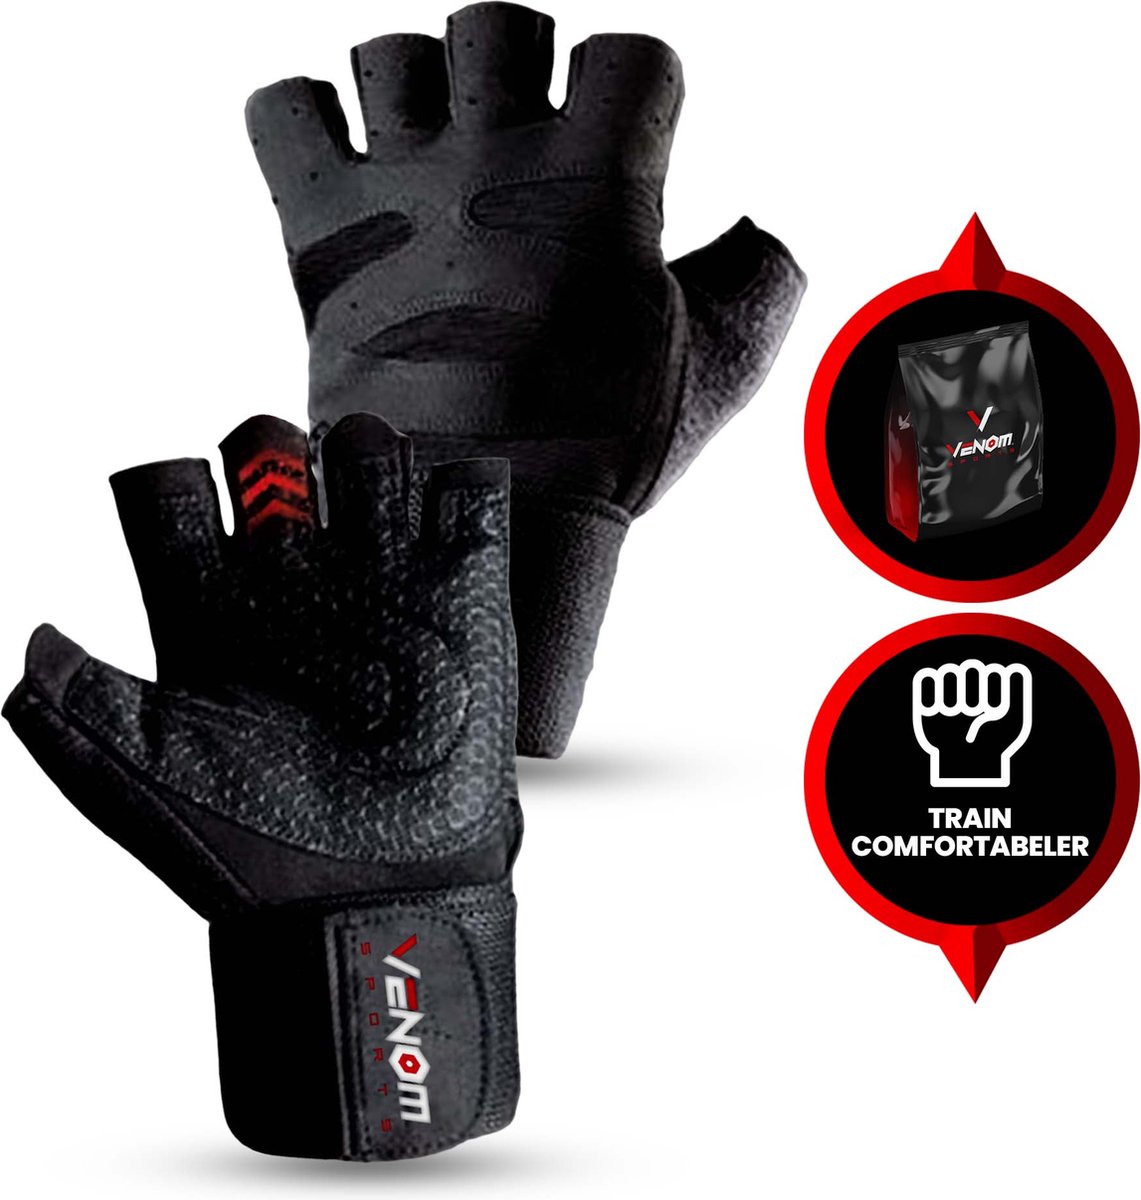 Venom Sports fitness handschoenen – handschoenen met polsondersteuning – sporthandschoenen voor krachttraining – trainingshandschoenen voor fitness & crossfit – zwart – maat M - 1 paar